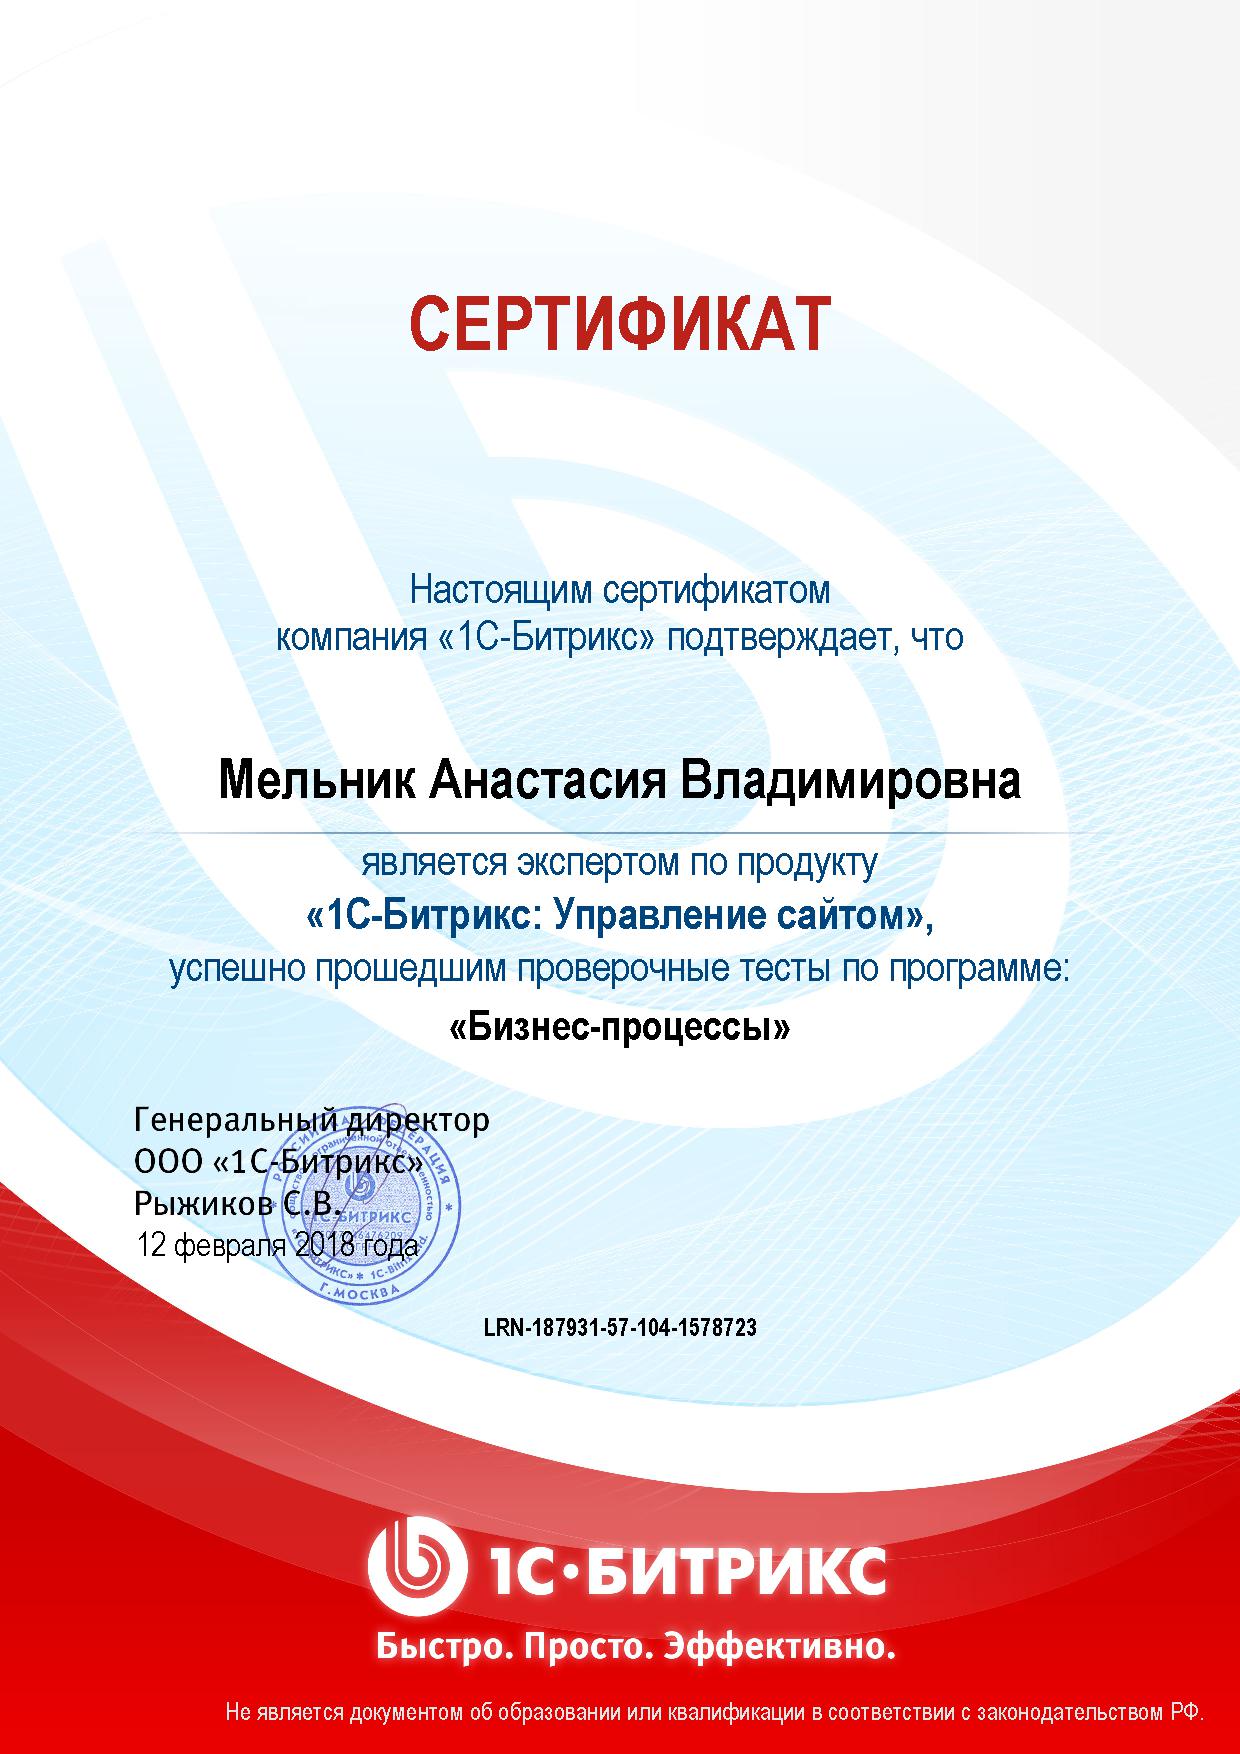 Сертификат Бизнес-процессы